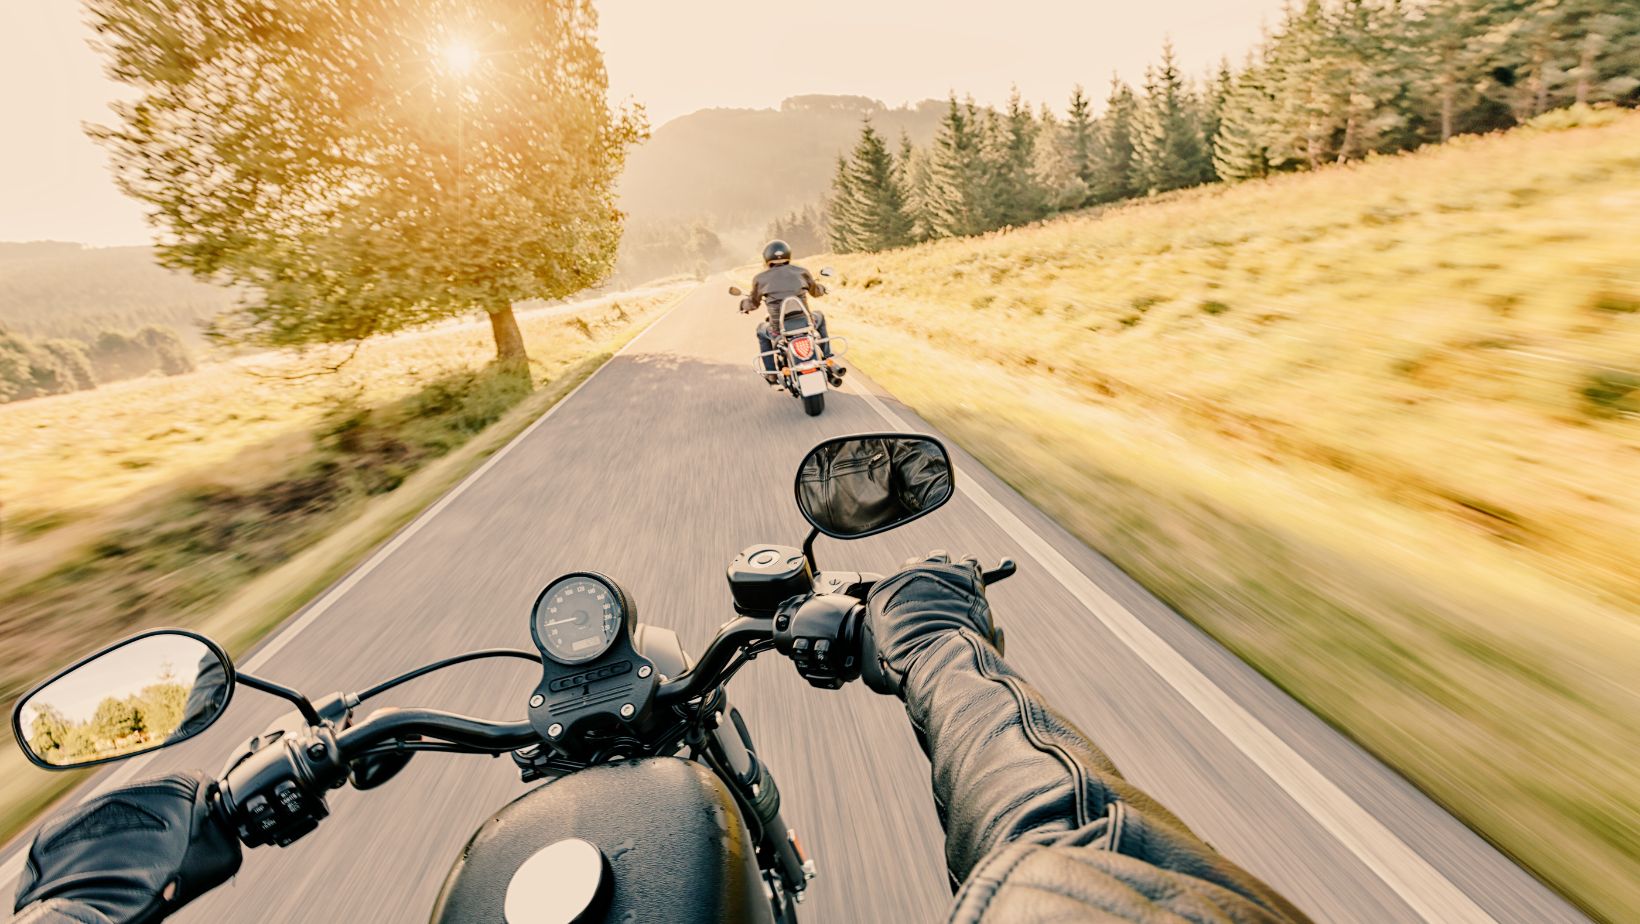 La importancia de usar el casco cuando viajas en moto